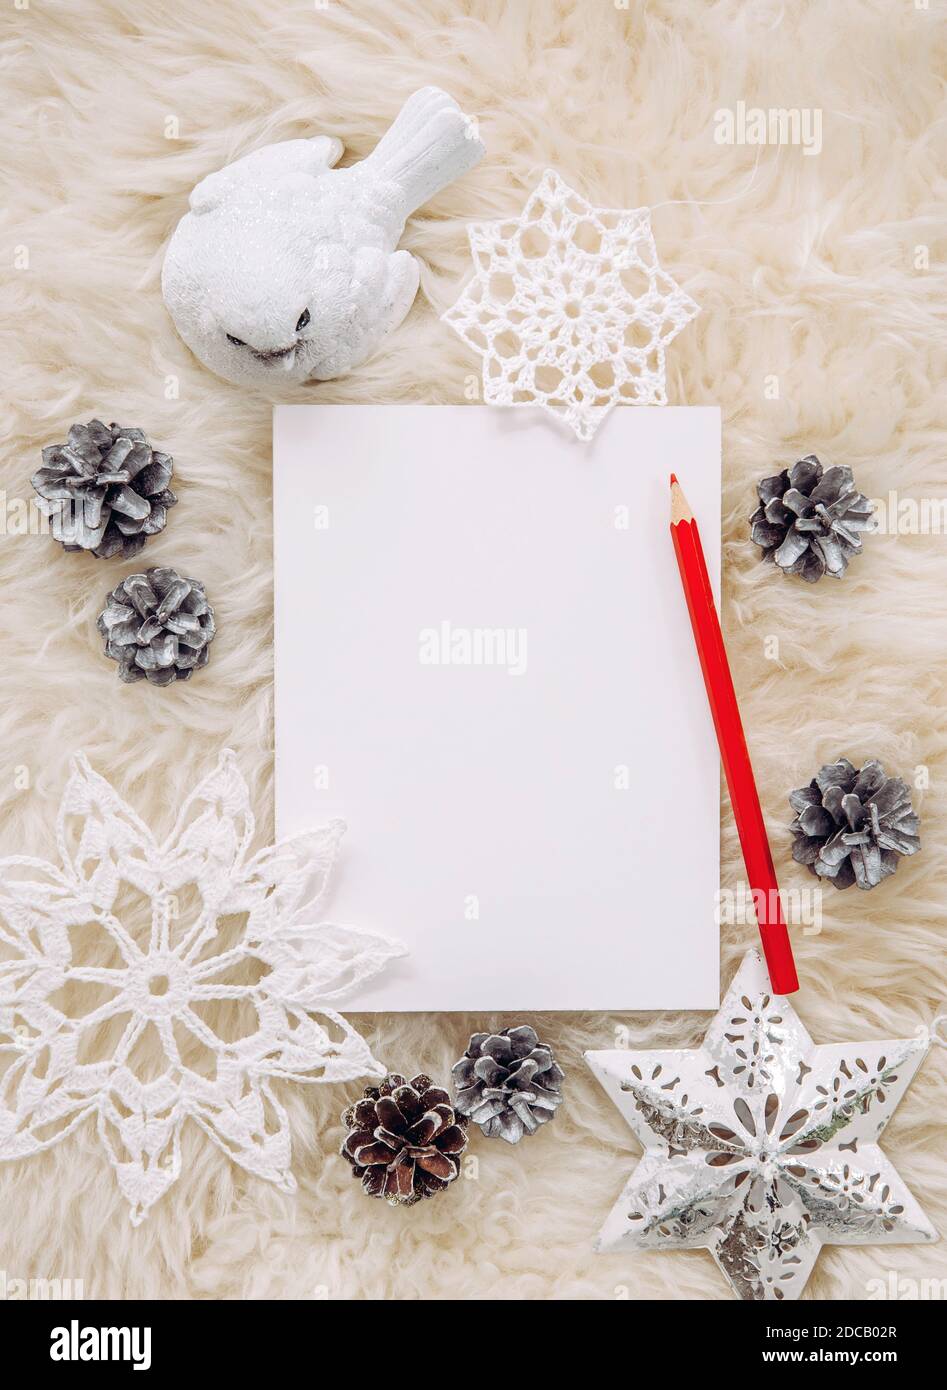 Brillante Charlotte Bronte Persona especial Vista plana de la hoja vacía de papel blanco para hacer regalos de Navidad  lista de deseos o escribir una carta a Santa Claus, Navidad blanco  minimalista Fotografía de stock - Alamy